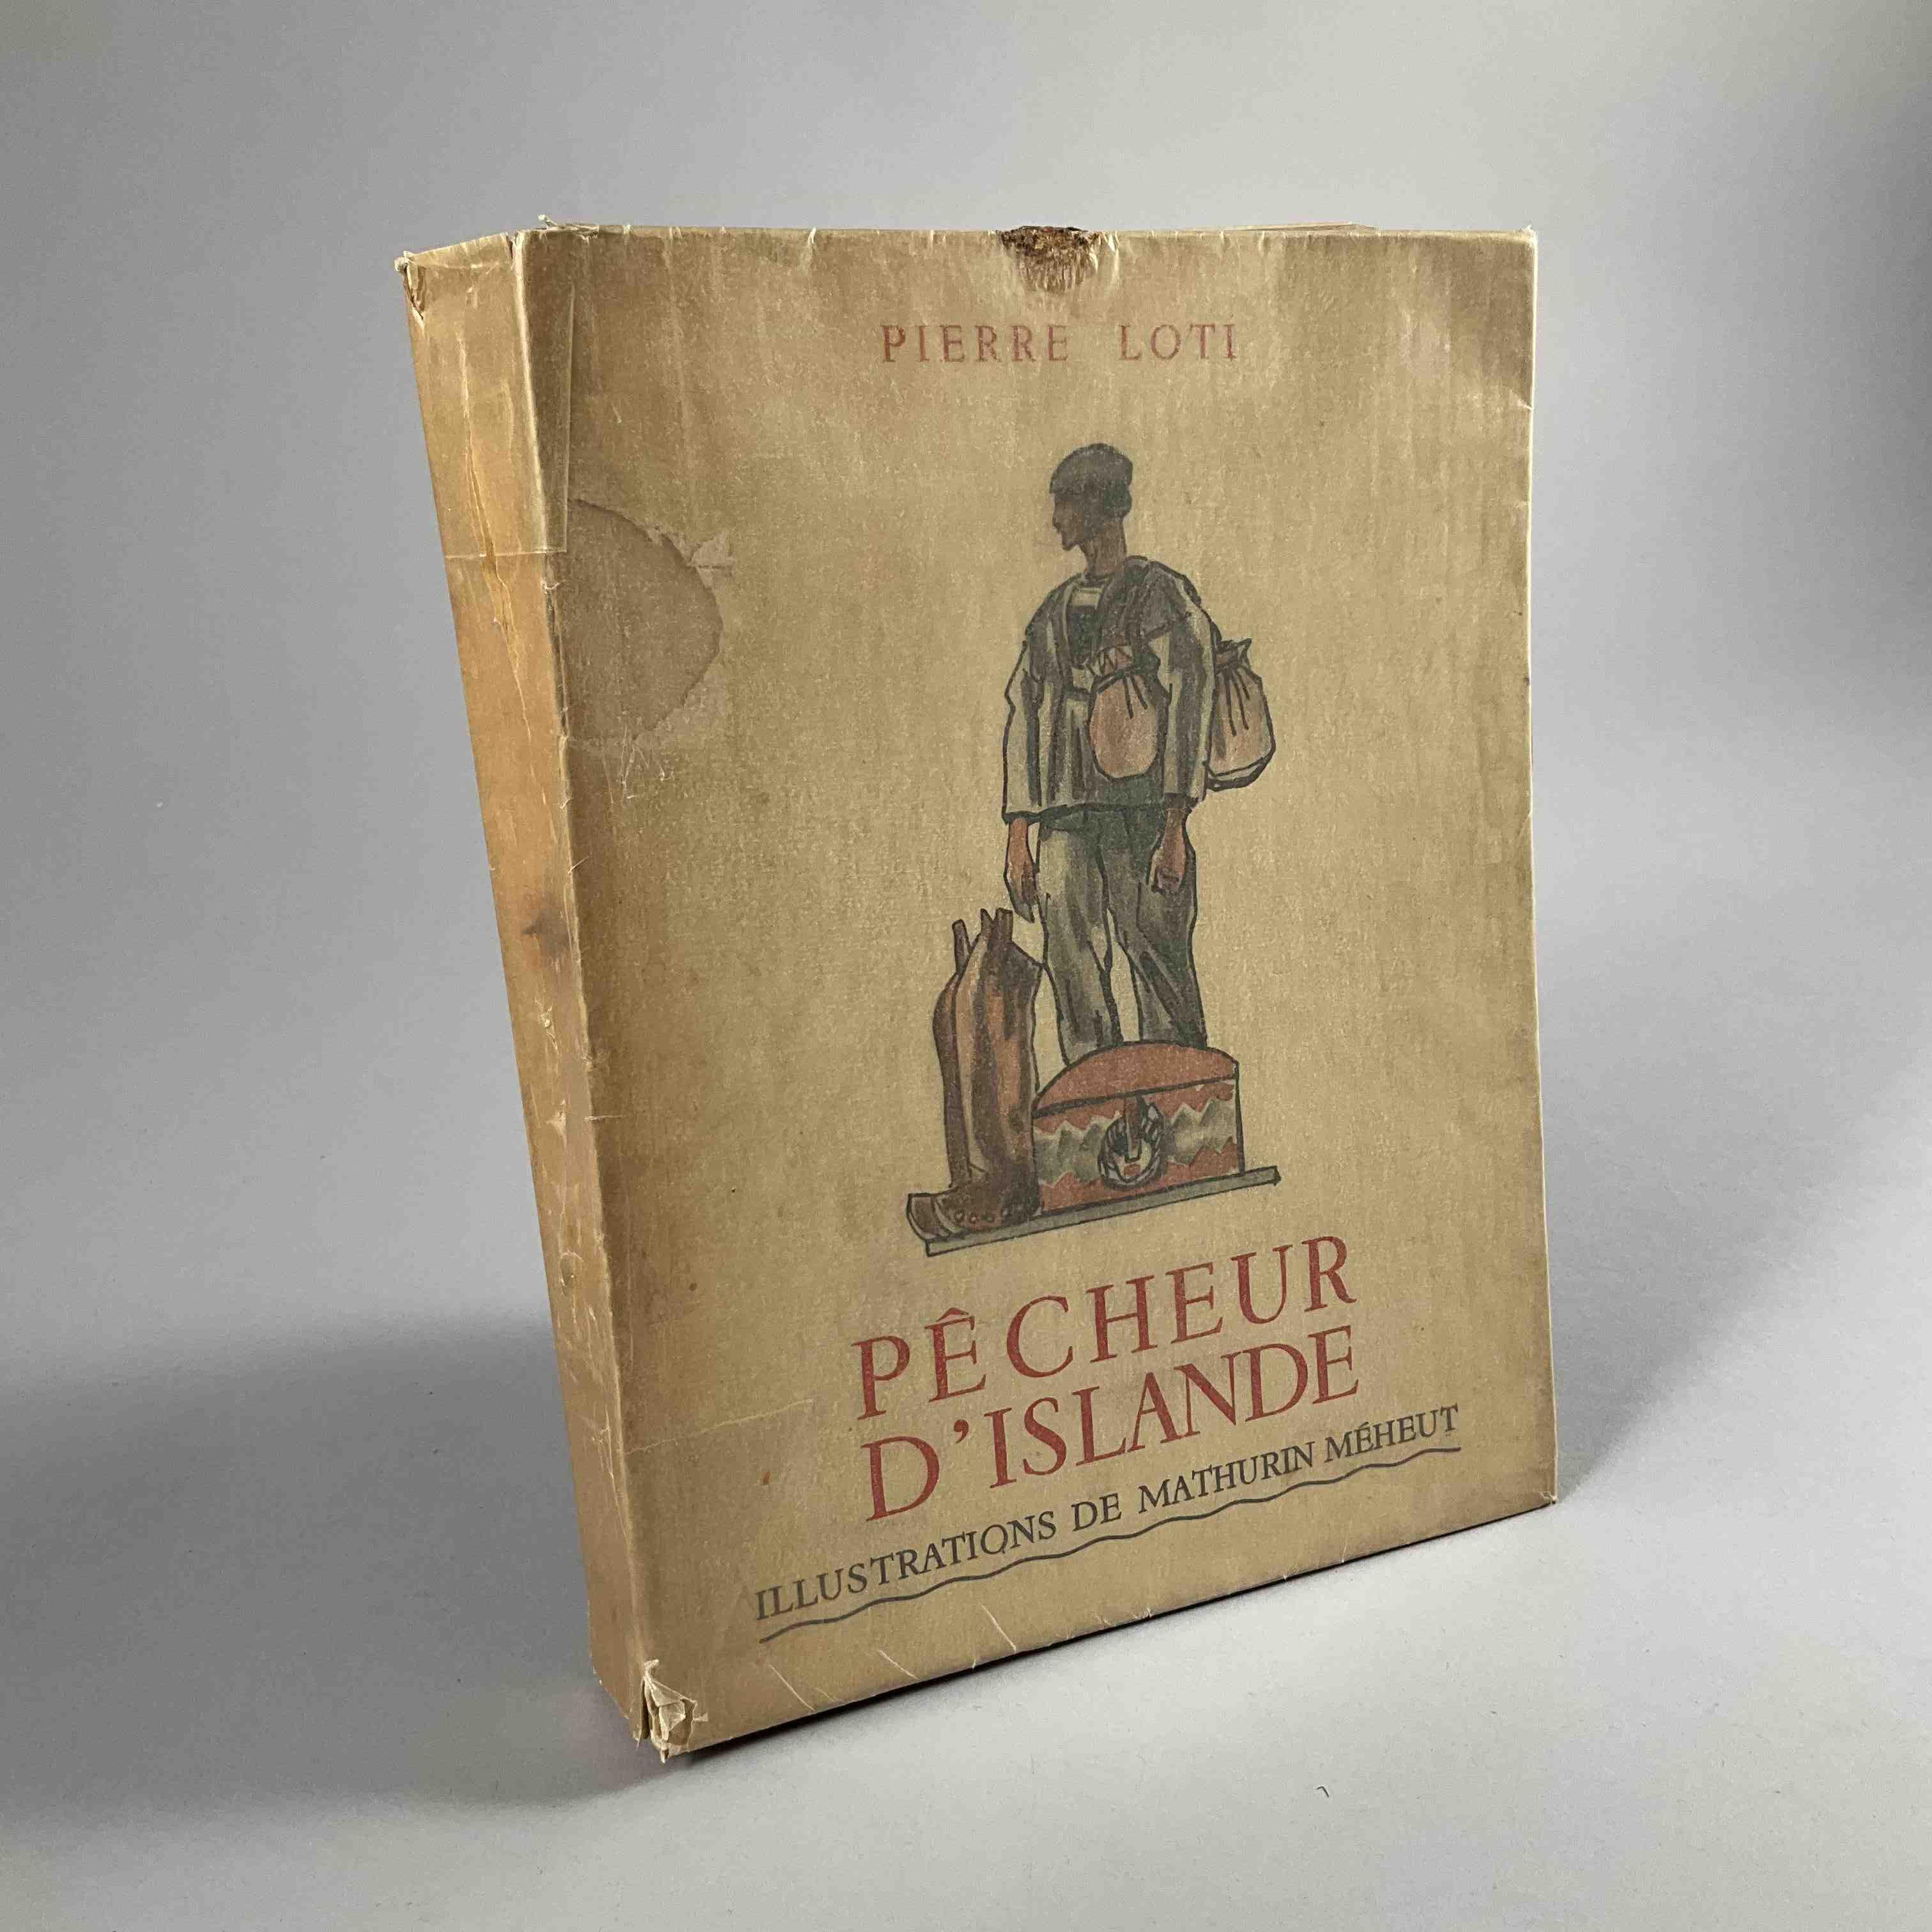 Pierre Loti, Pêcheur d'Islande.
Paris, Calmann-Lévy, 1936. 
Illustrations de Mathurin Méheut,...